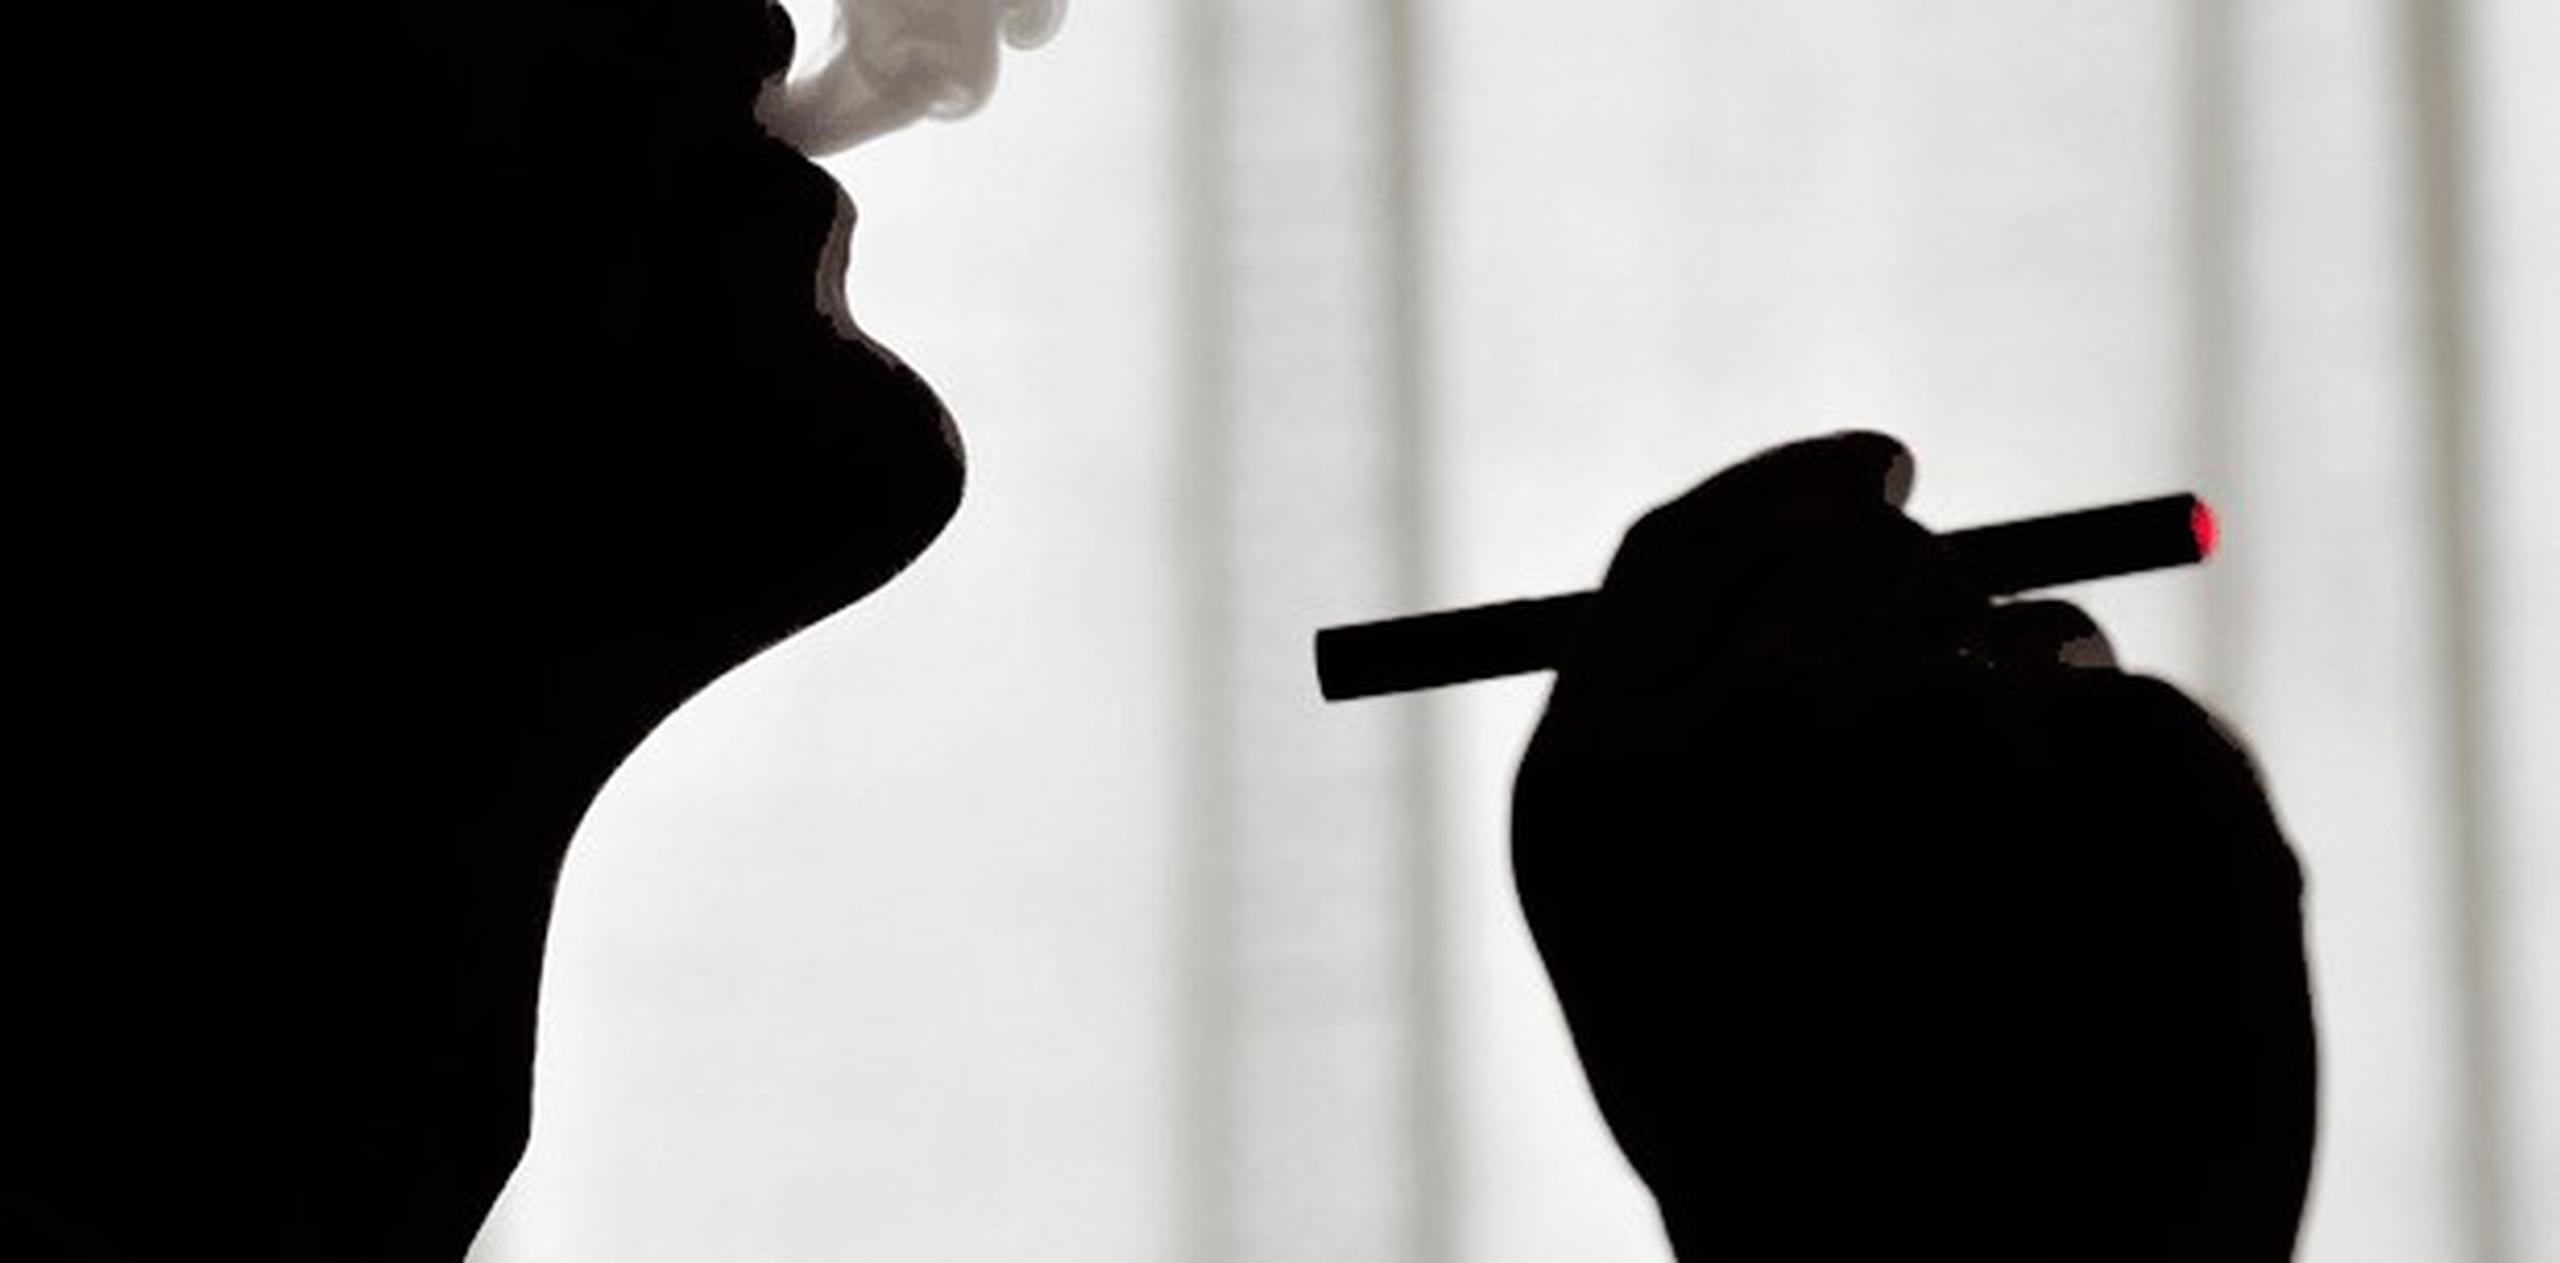 Los artefactos han superado la popularidad de los cigarrillos tradicionales entre los adolescentes. (Archivo)